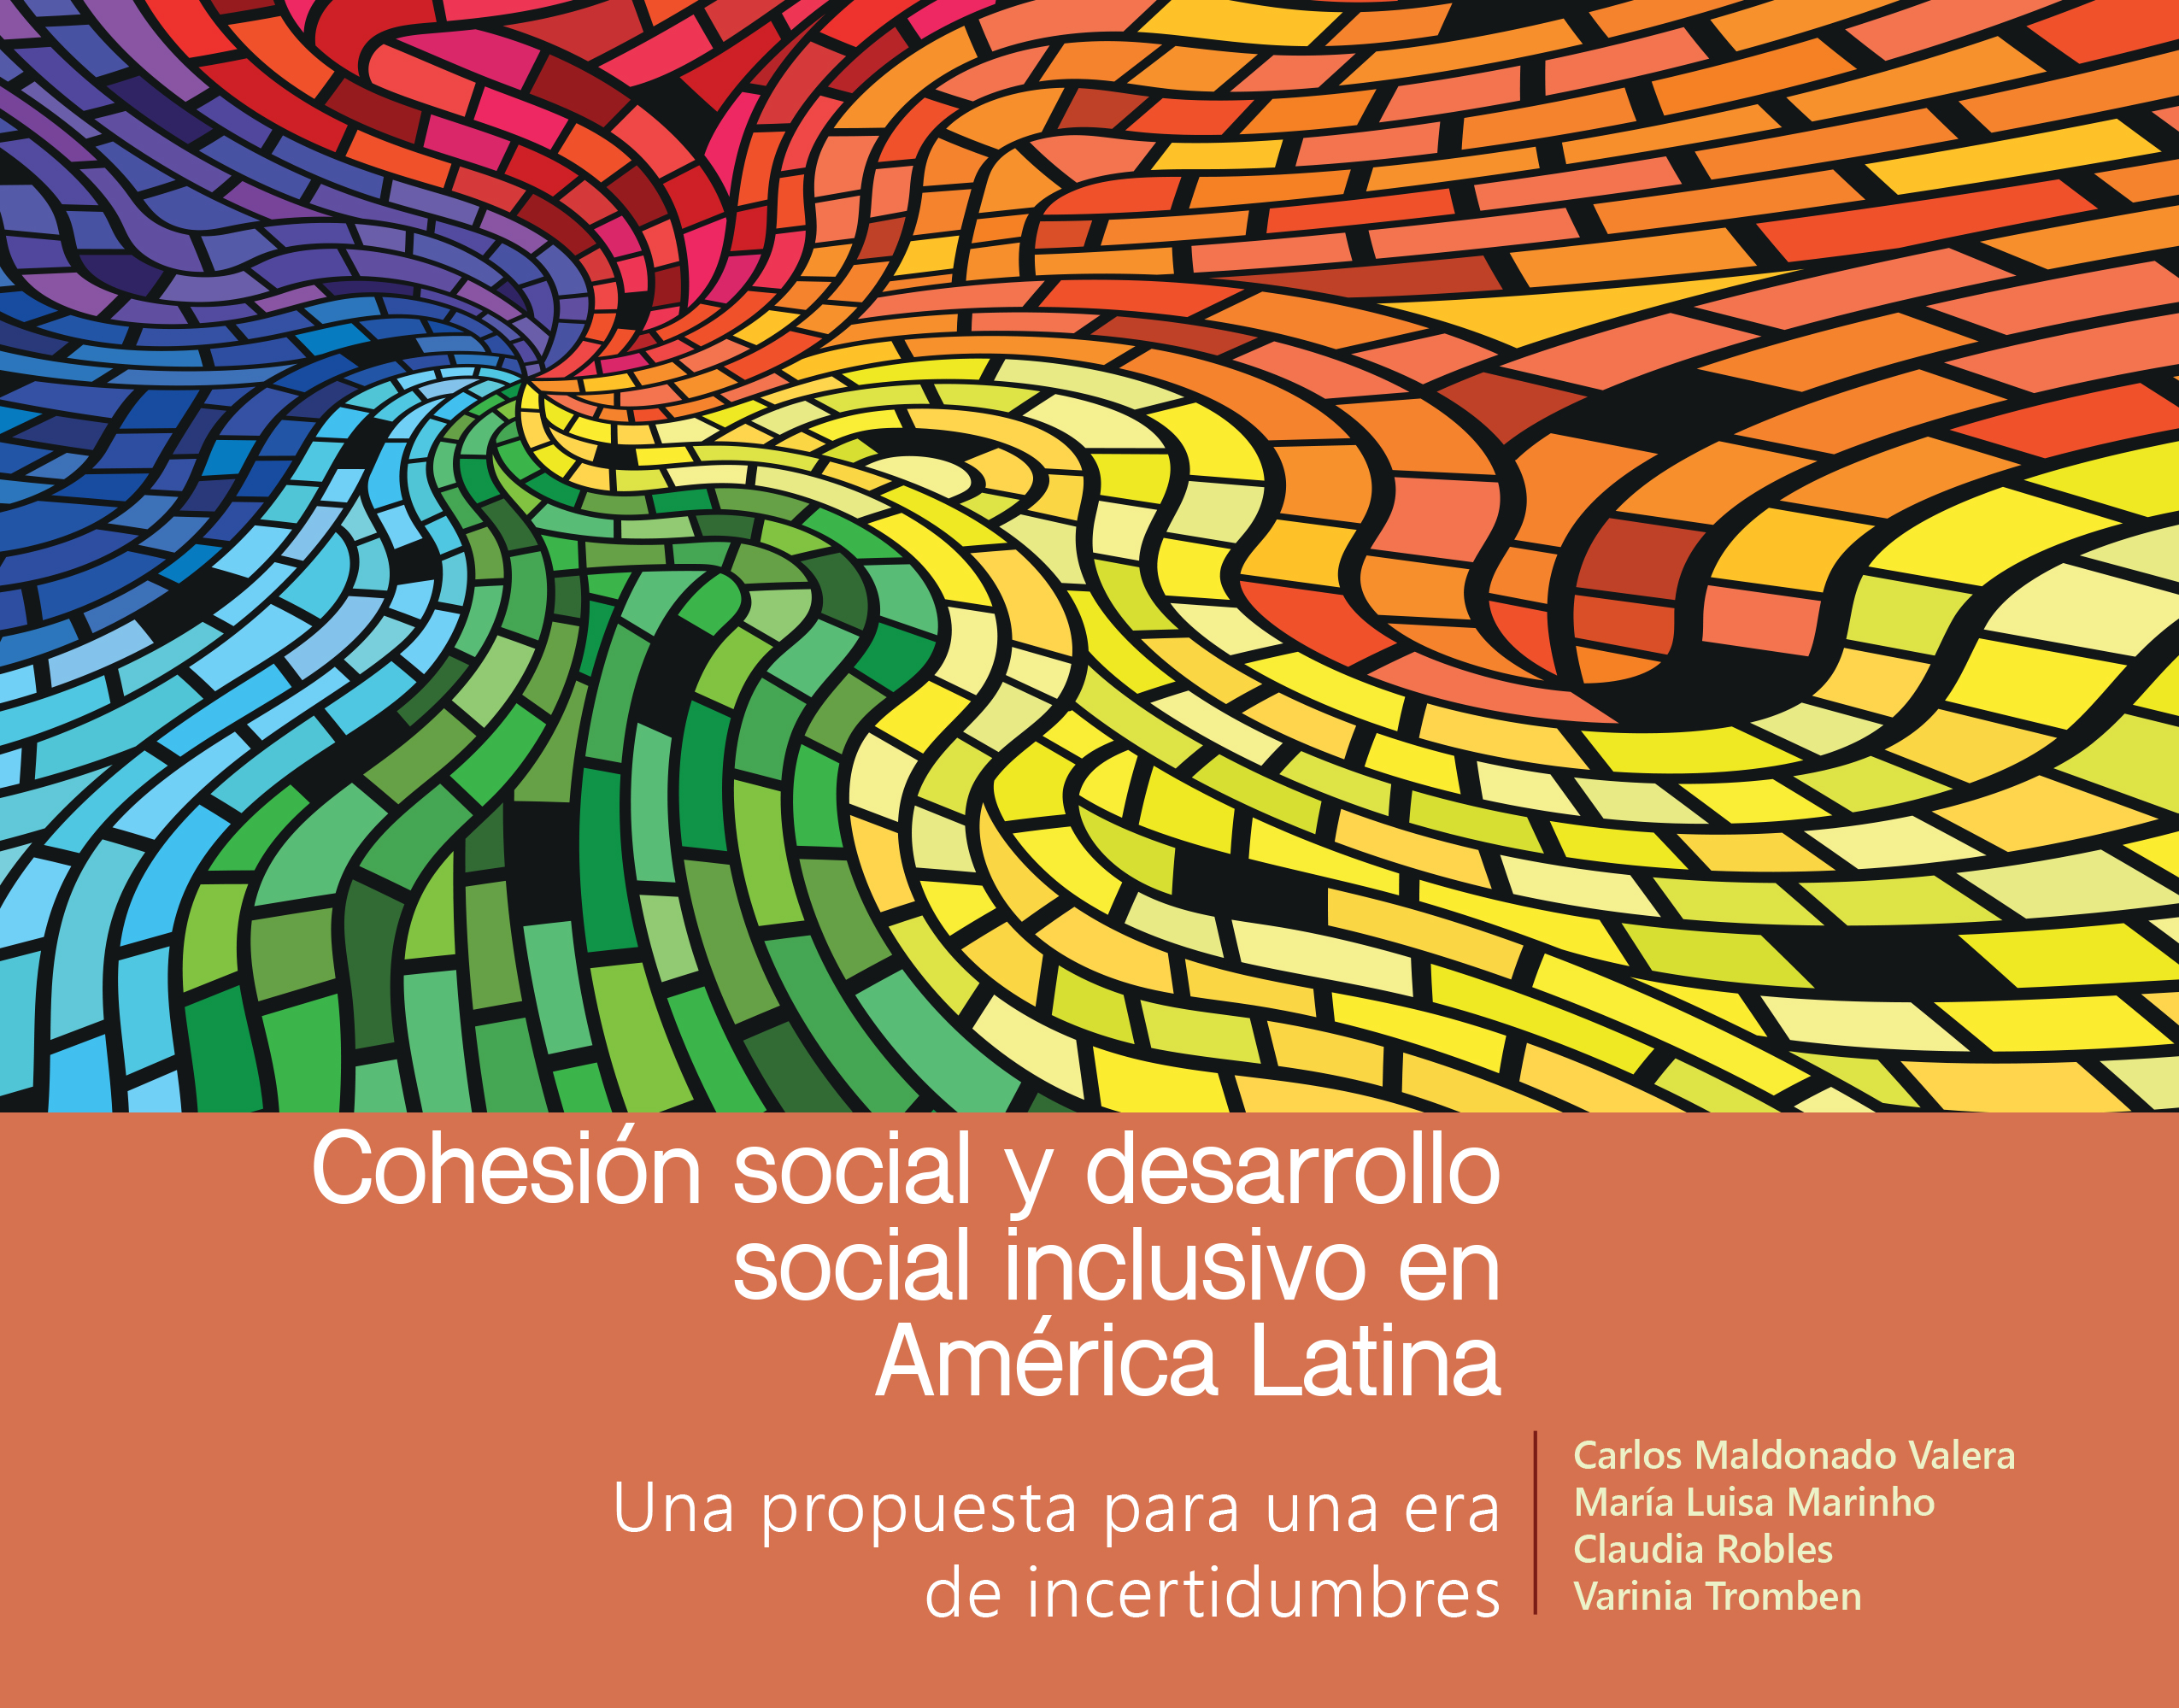 Seminario Internacional Virtual con motivo del lanzamiento del documento “Cohesión social y desarrollo social inclusivo en América Latina: una propuesta para una era de incertidumbres»